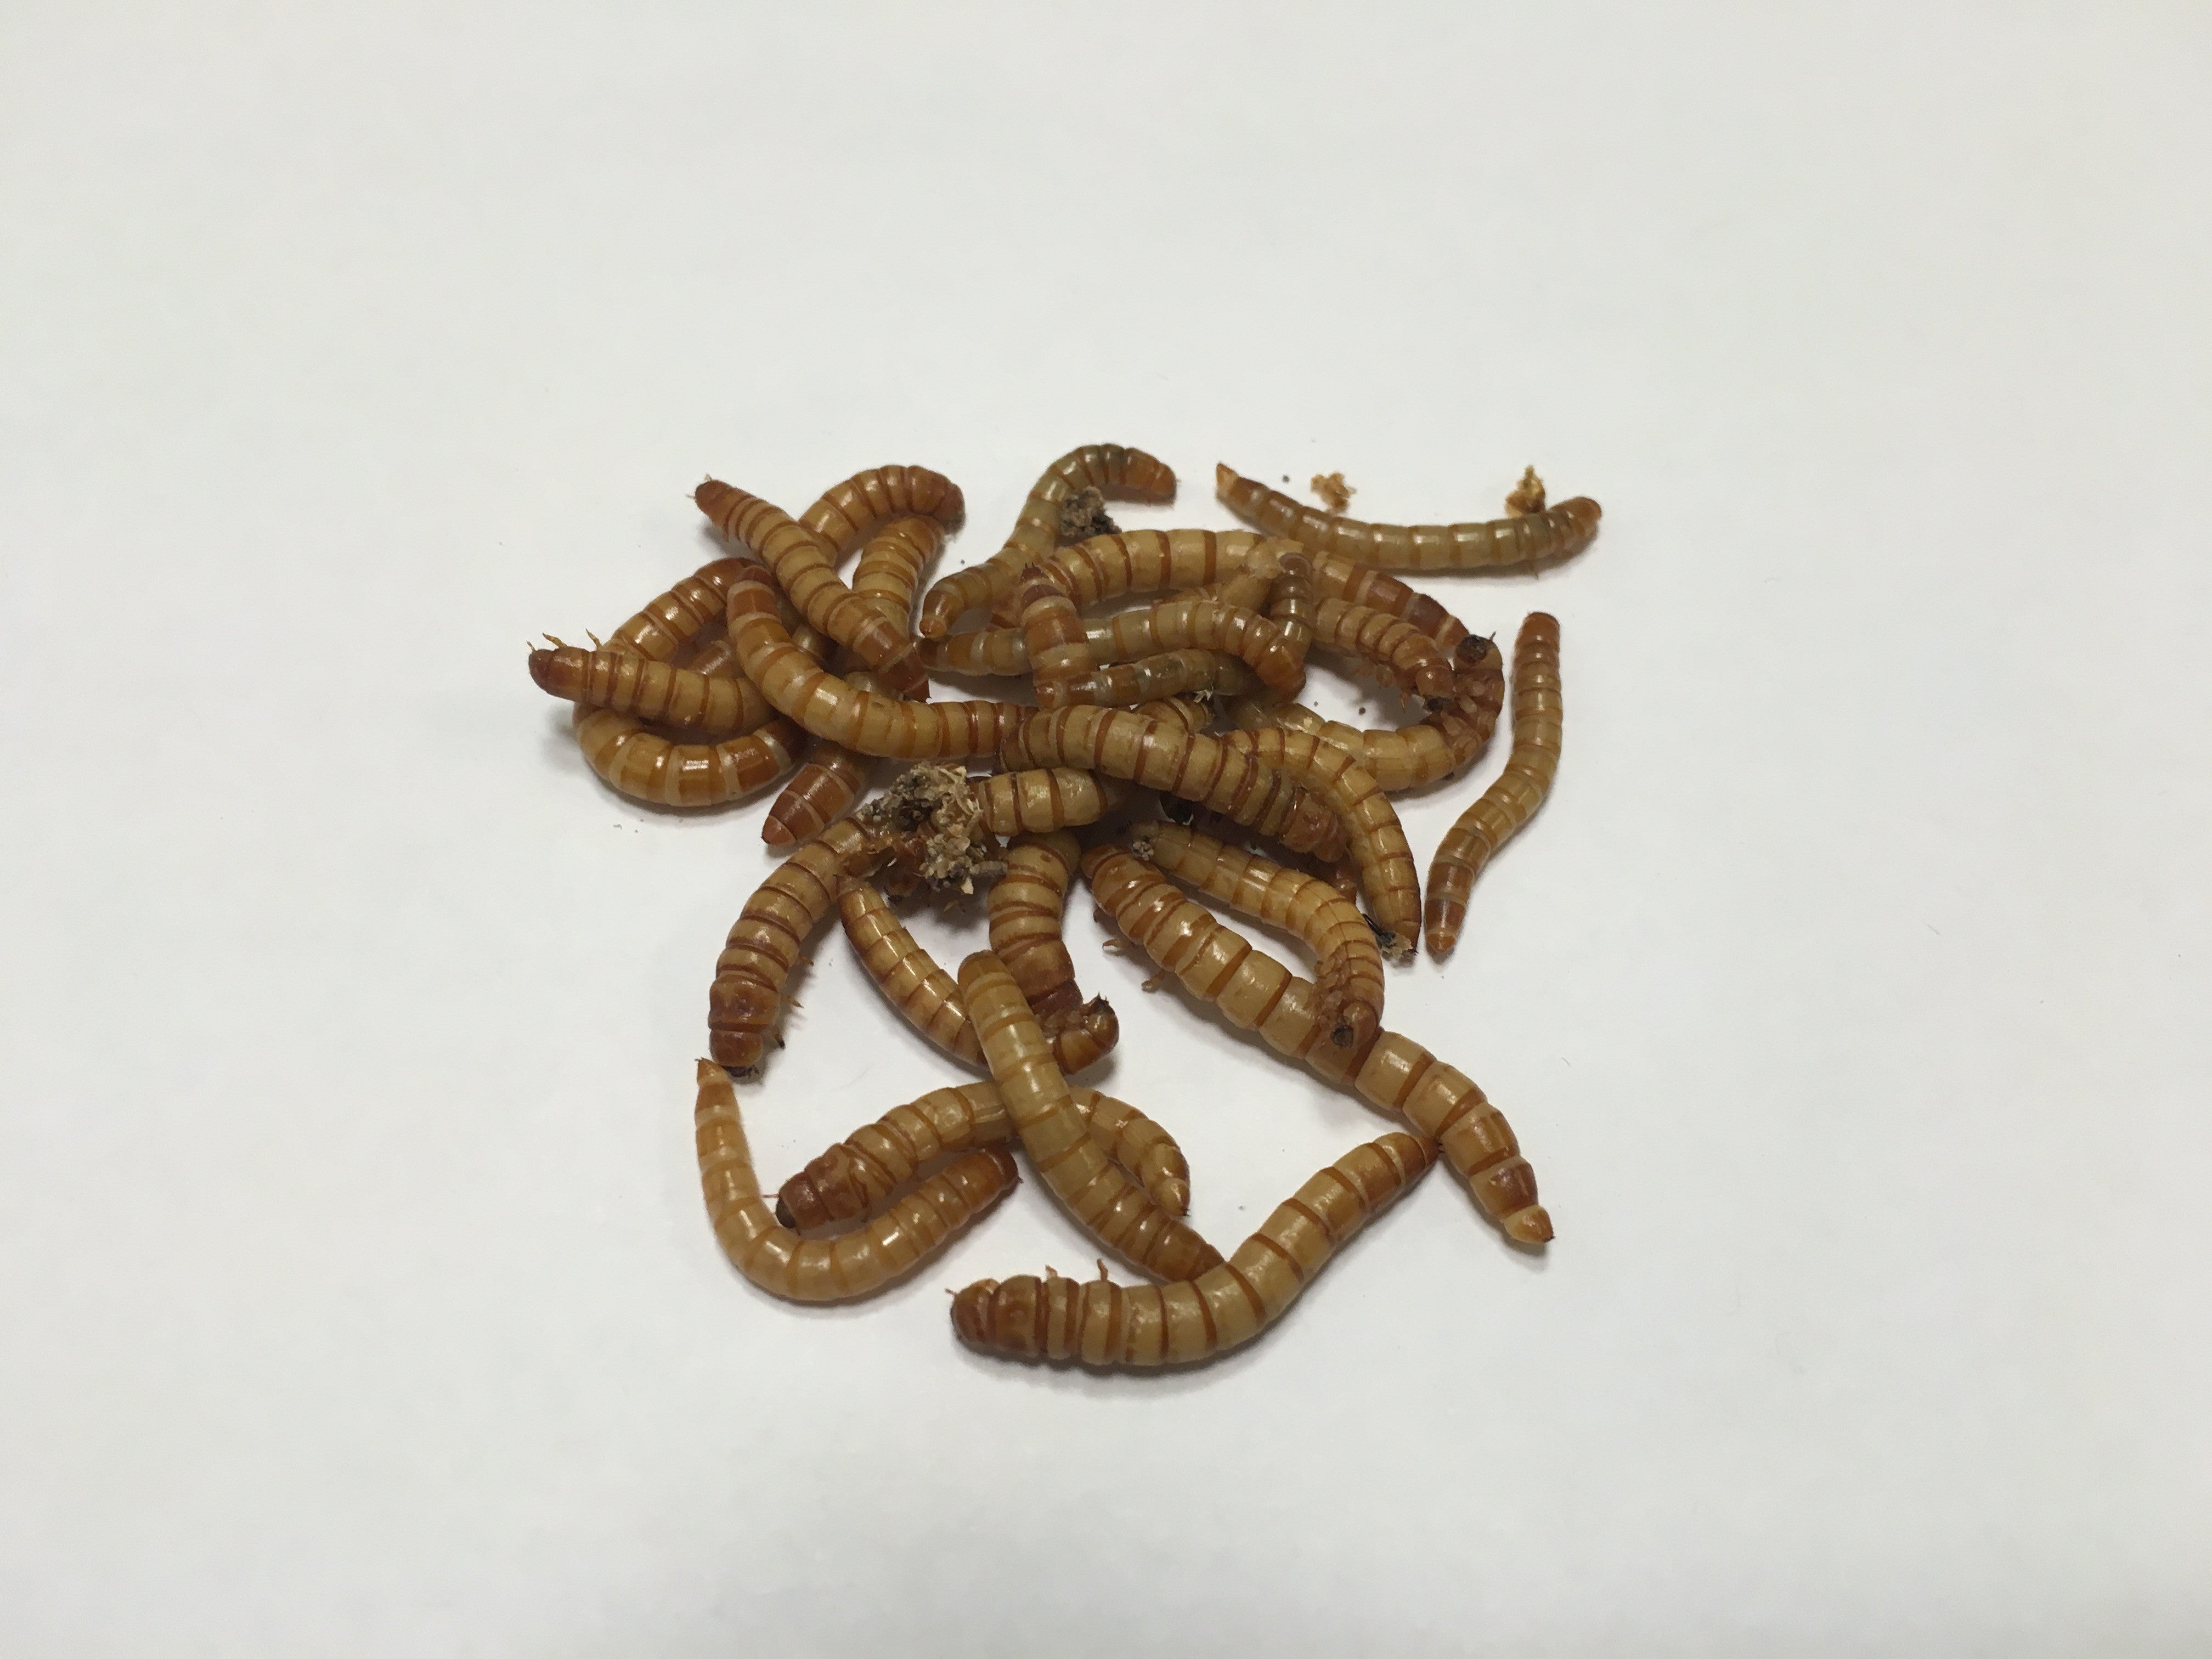 500 Ct. Mealworms - Buckeye Organics